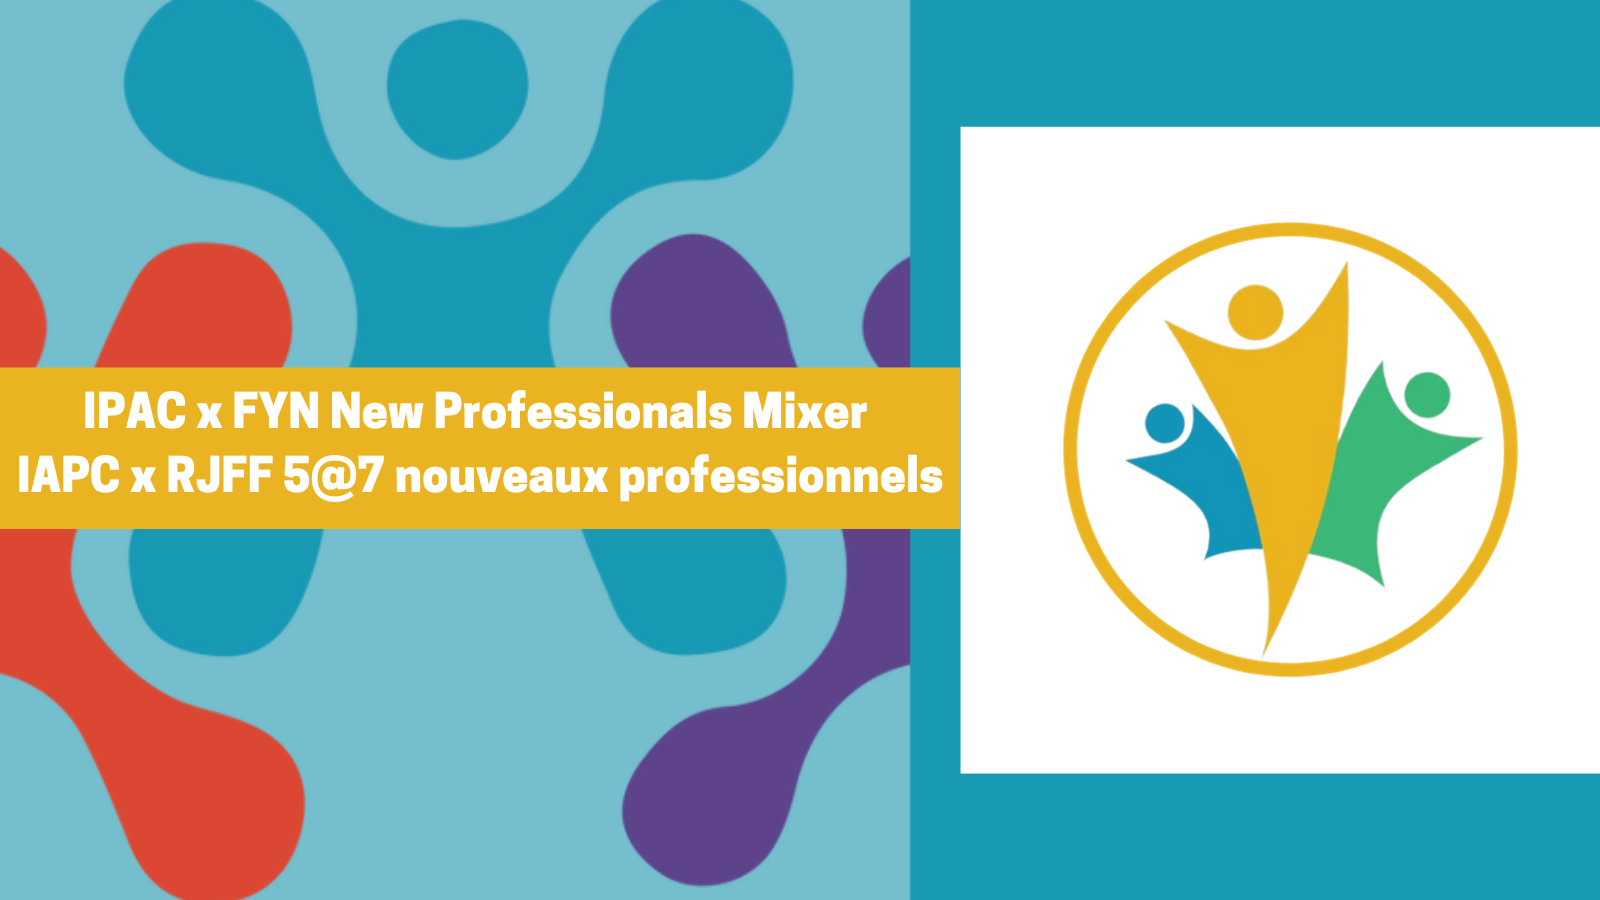 IPAC x FYN New Professionals Mixer IAPC x RJFF 5@7 nouveaux professionnels